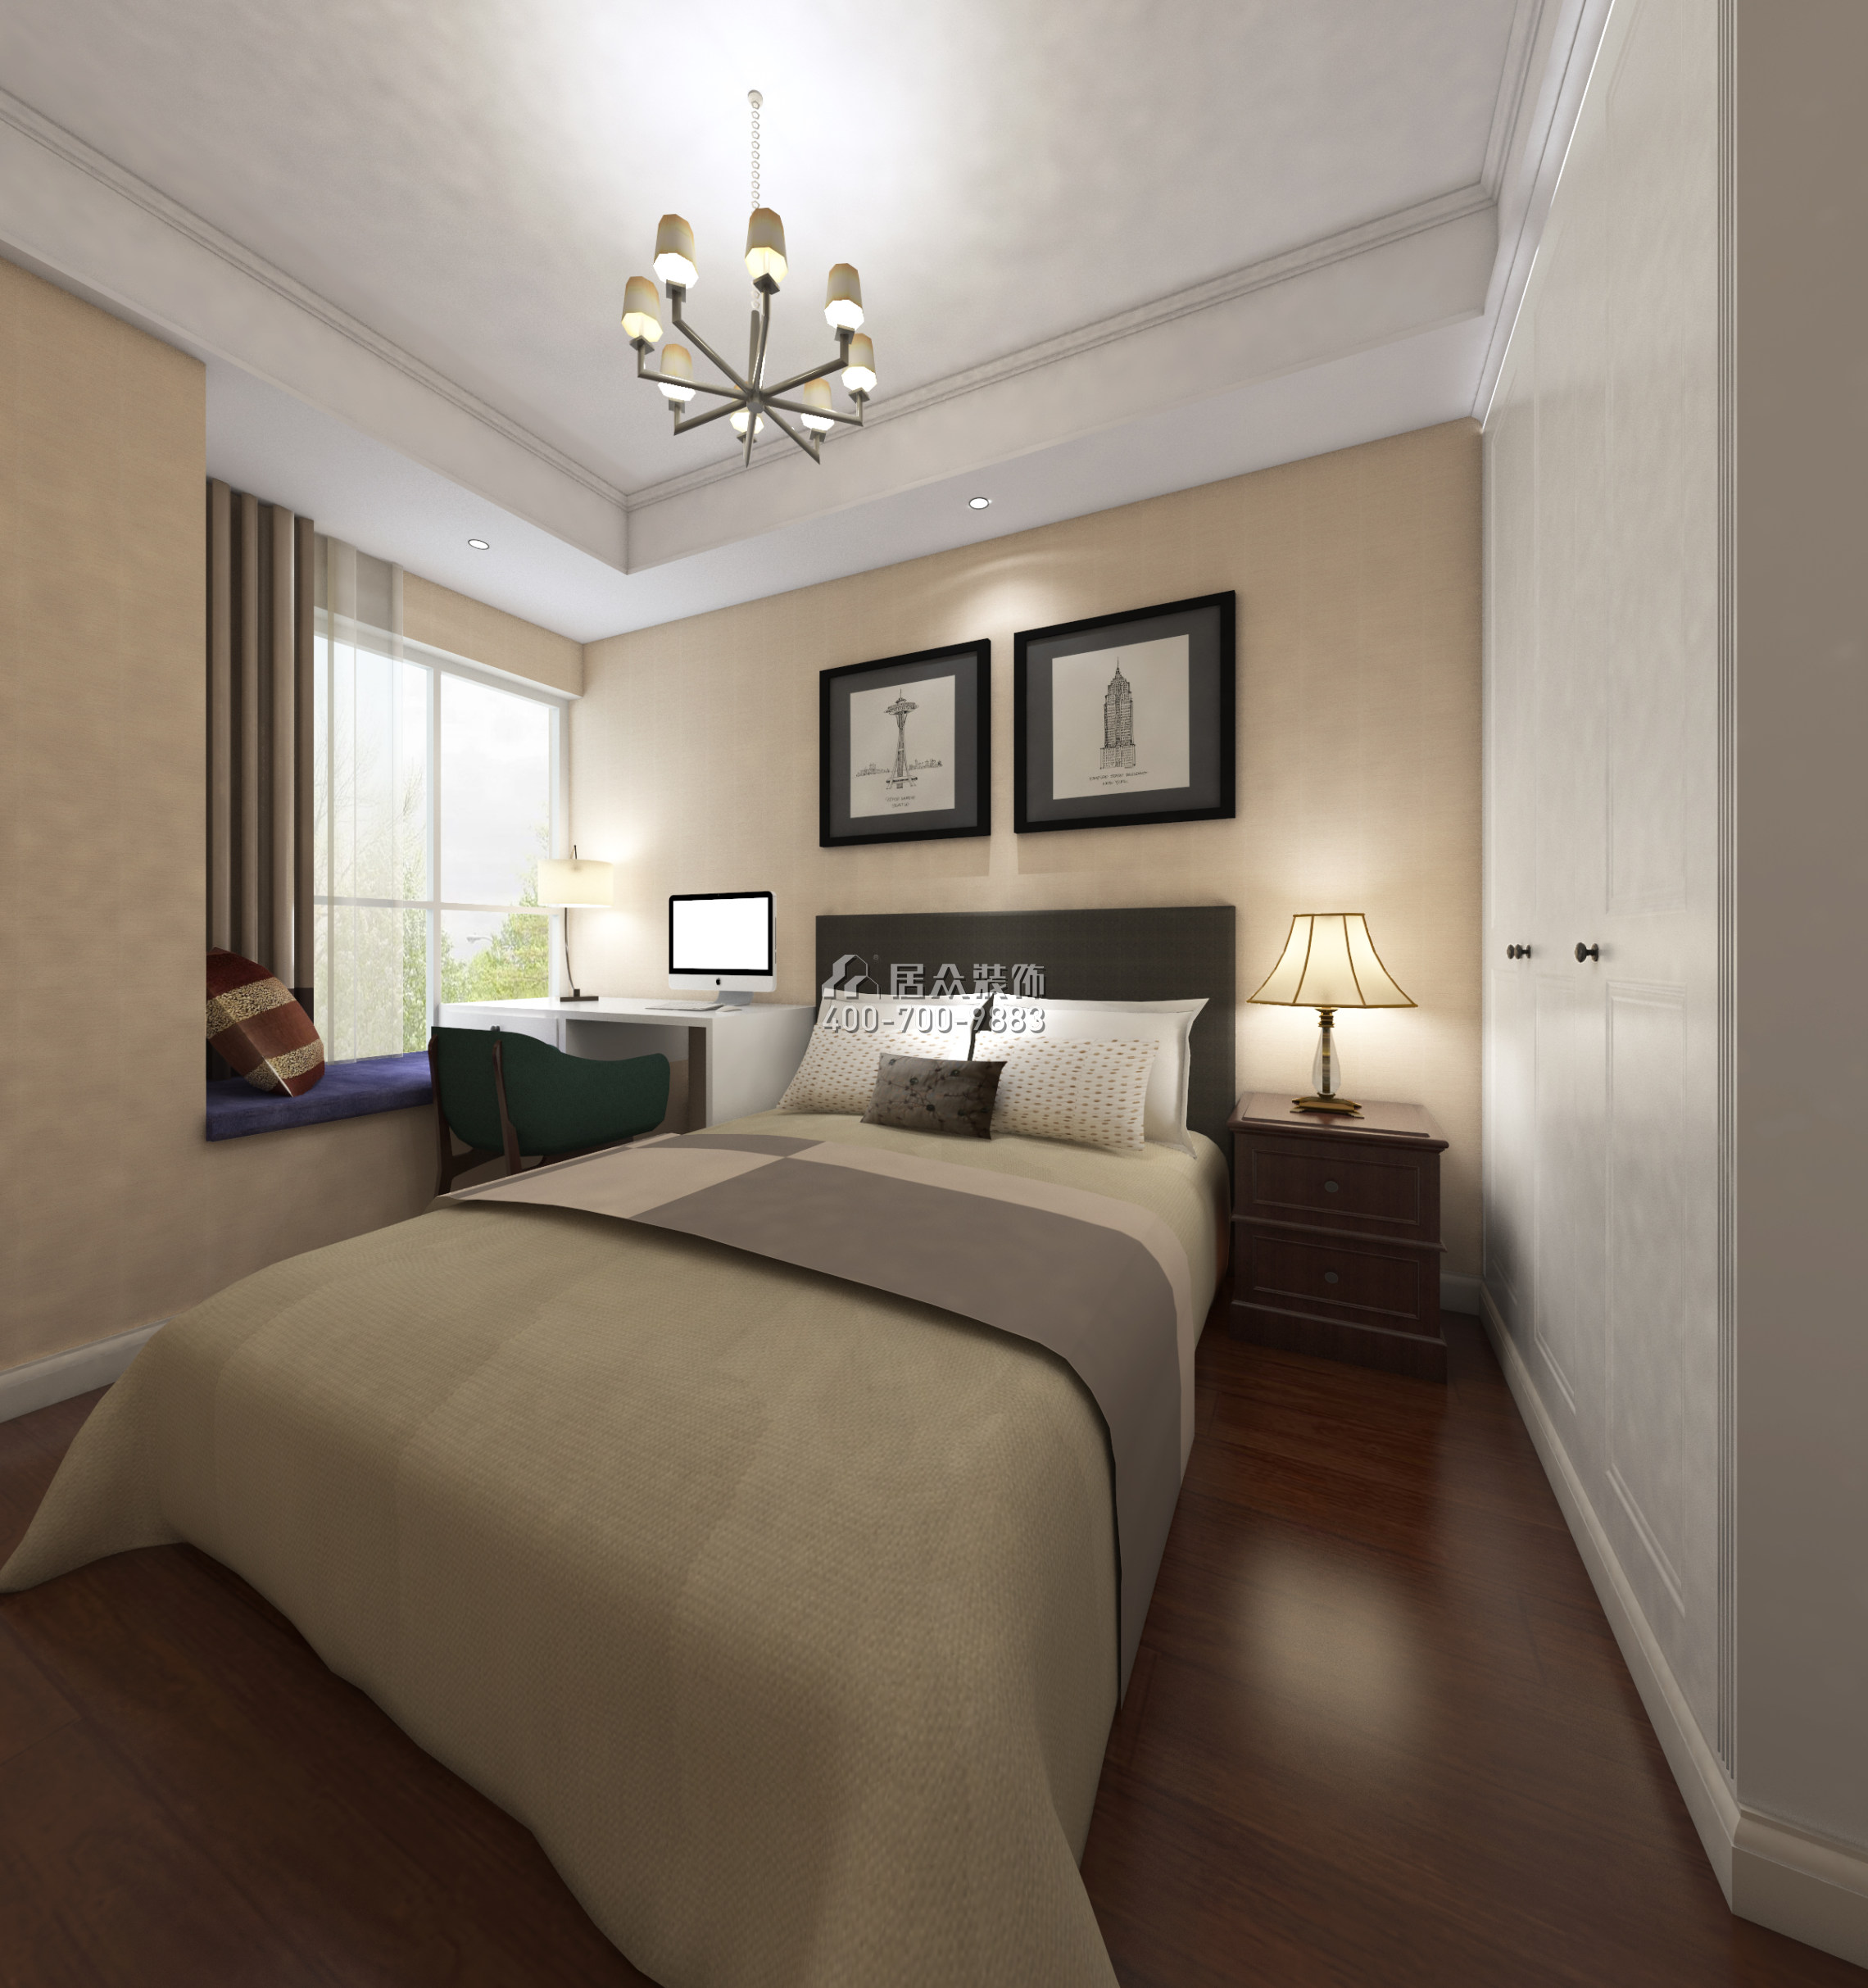 黃埔雅苑一期143平方米美式風格平層戶型臥室裝修效果圖